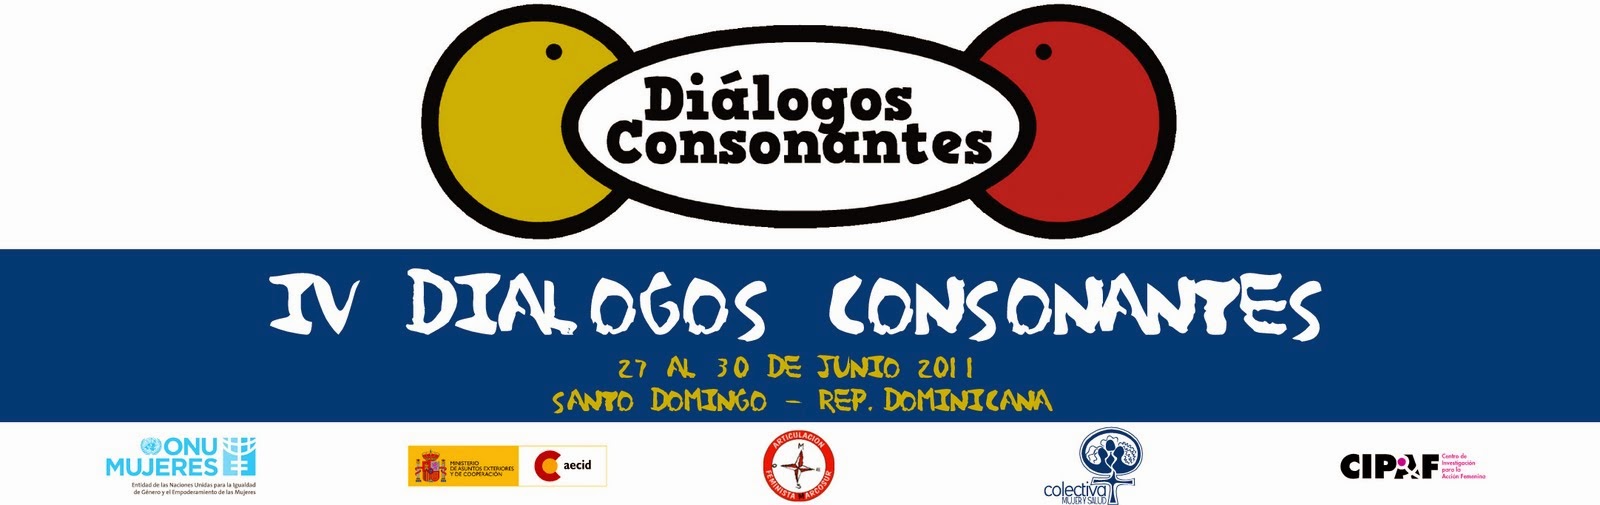 "IV DIALOGOS CONSONANTES"